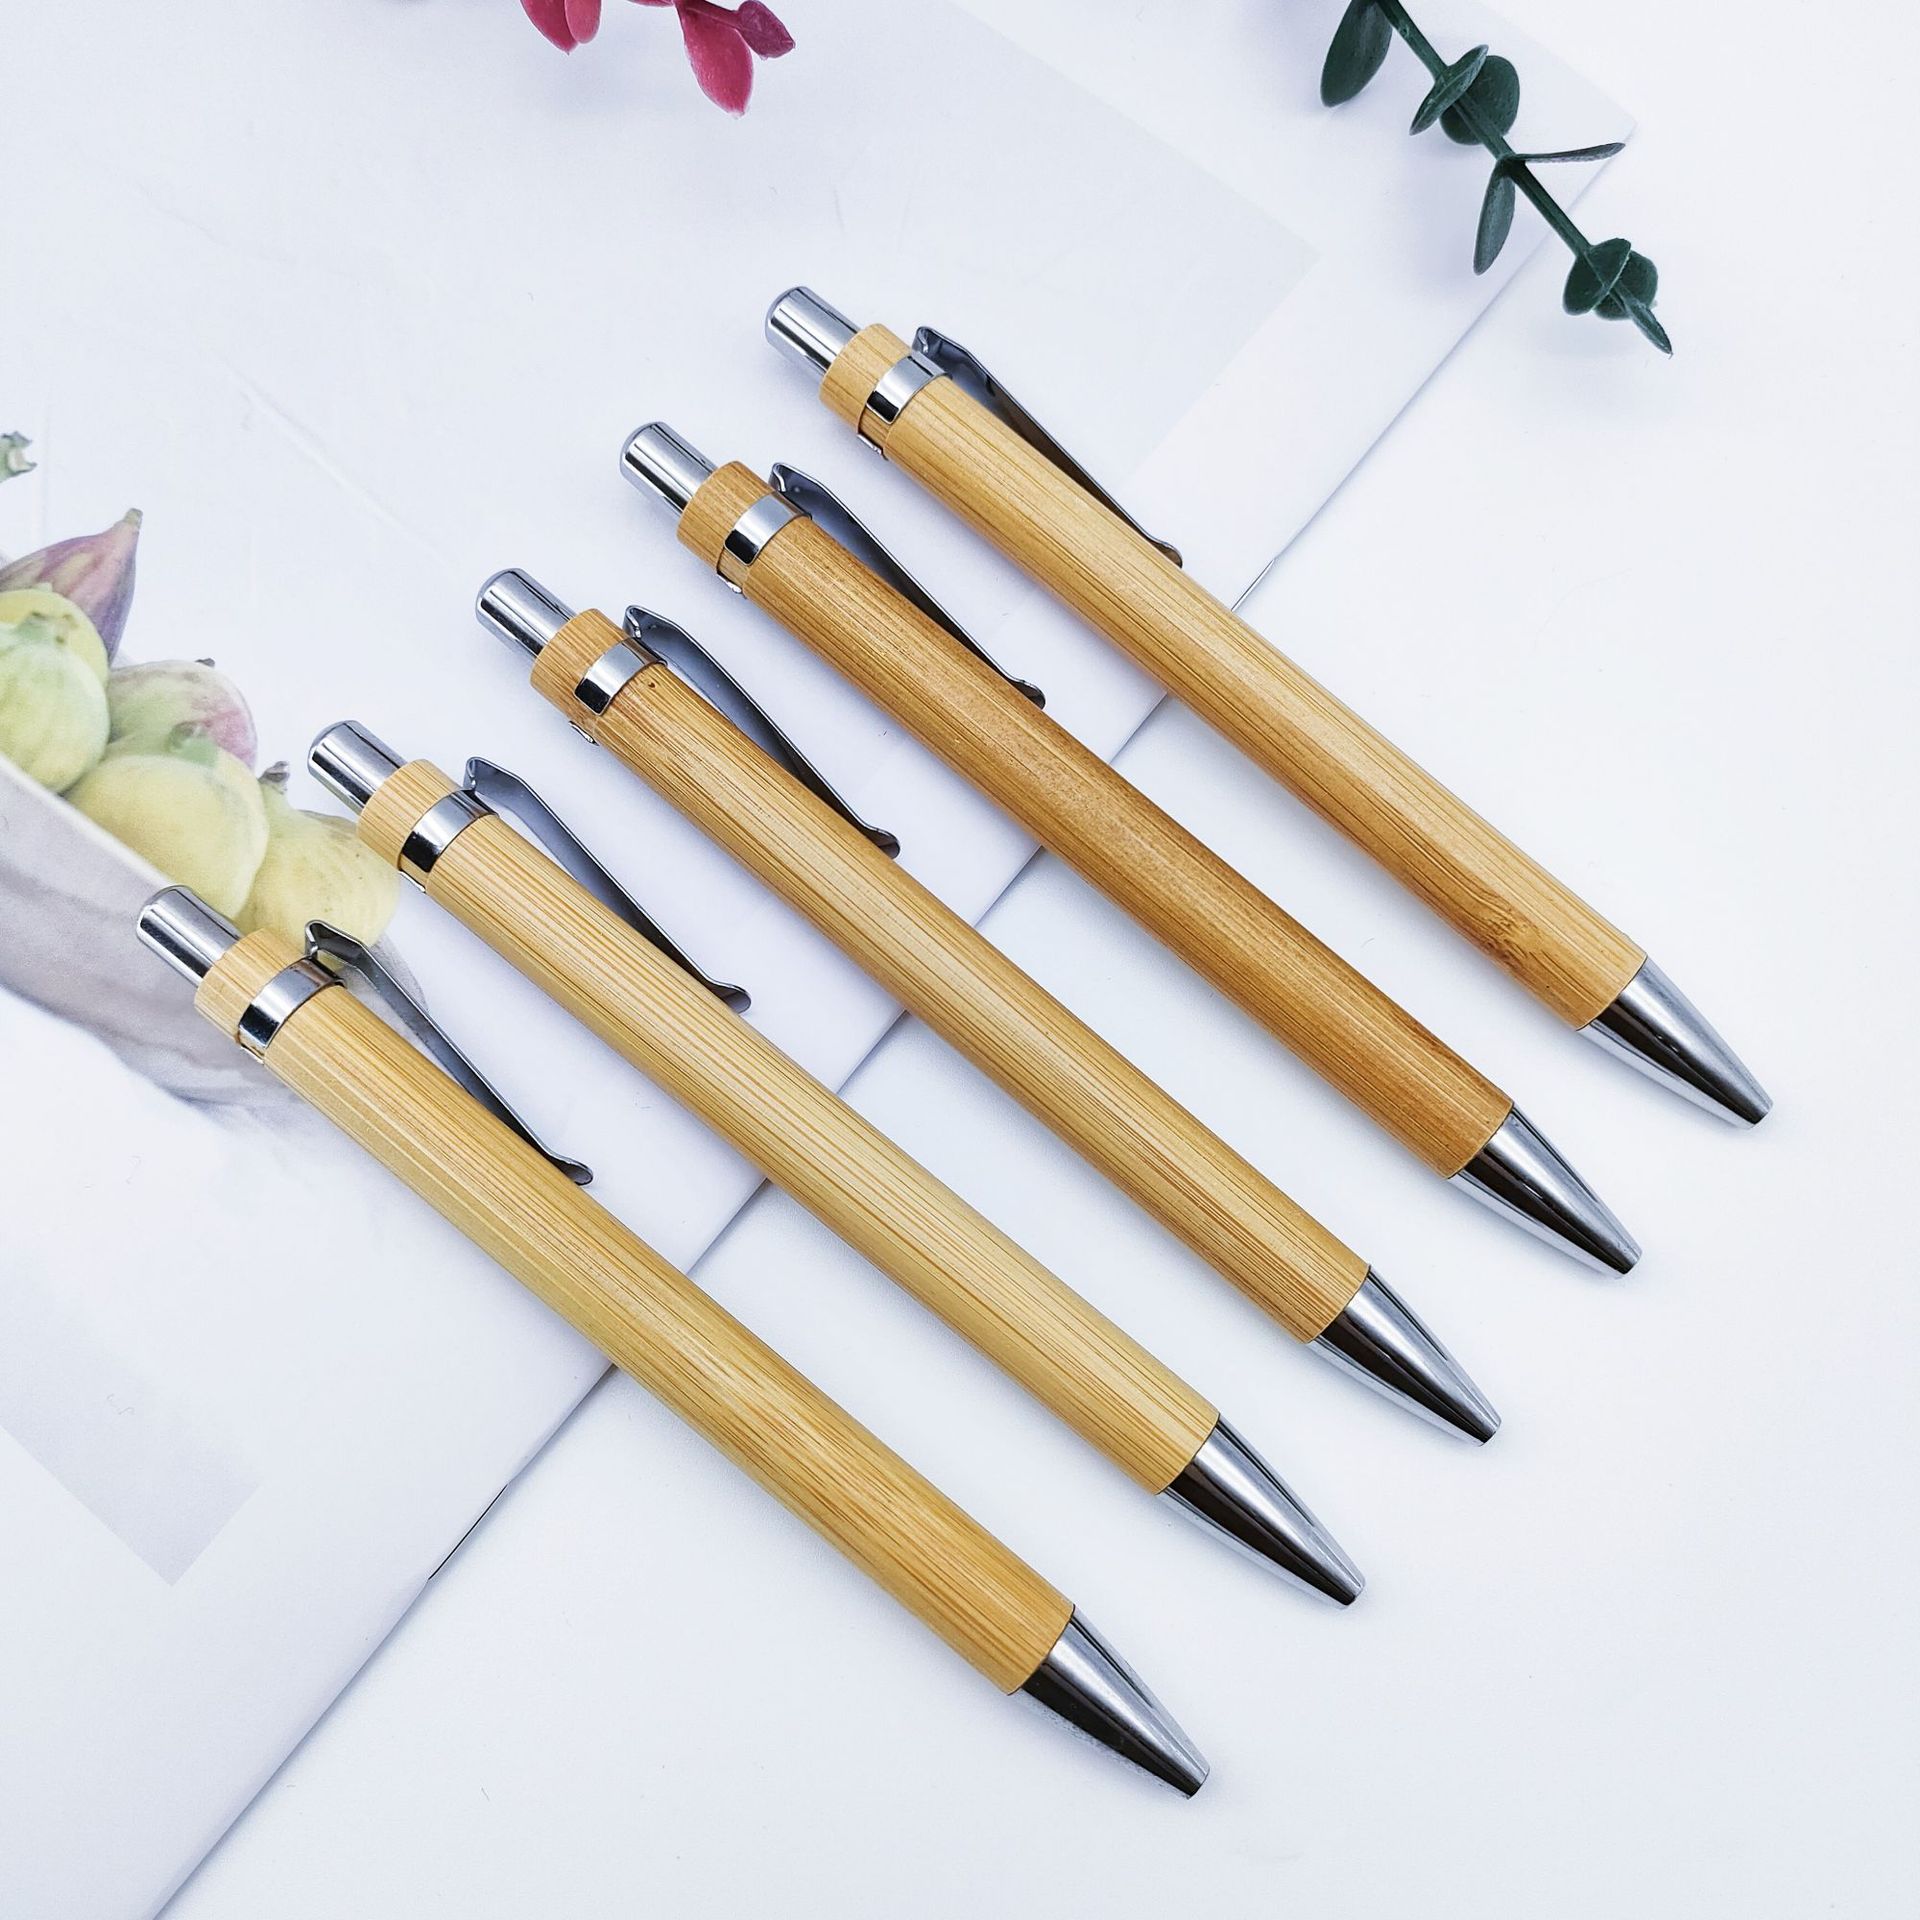 竹子笔环保竹木材质按动圆珠笔广告礼品签字笔可印刷LOGO现货批发